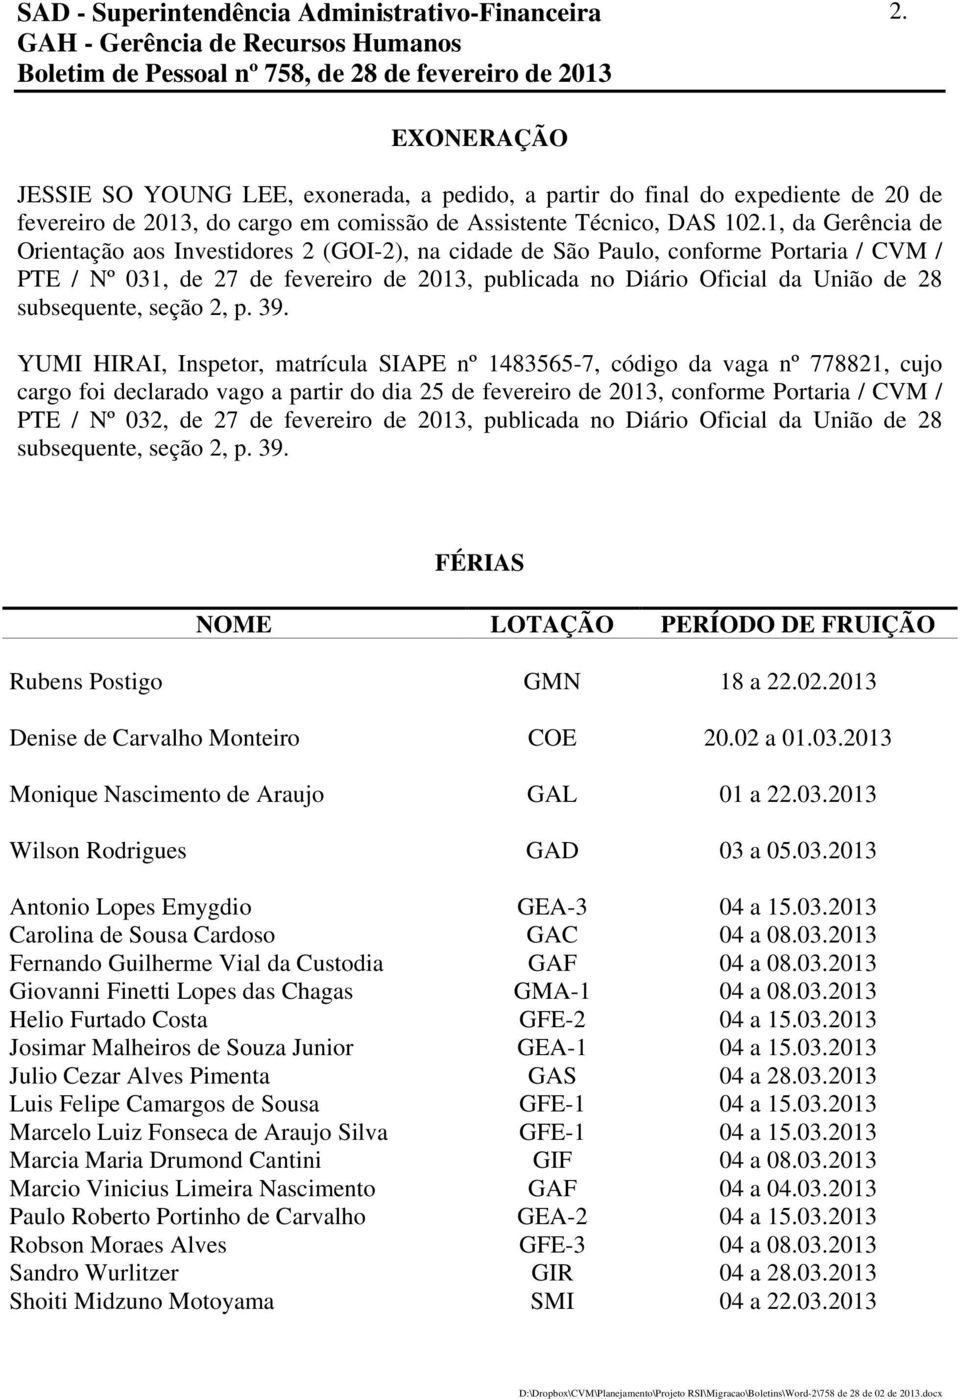 1, da Gerência de Orientação aos Investidores 2 (GOI-2), na cidade de São Paulo, conforme Portaria / CVM / PTE / Nº 031, de 27 de fevereiro de 2013, publicada no Diário Oficial da União de 28